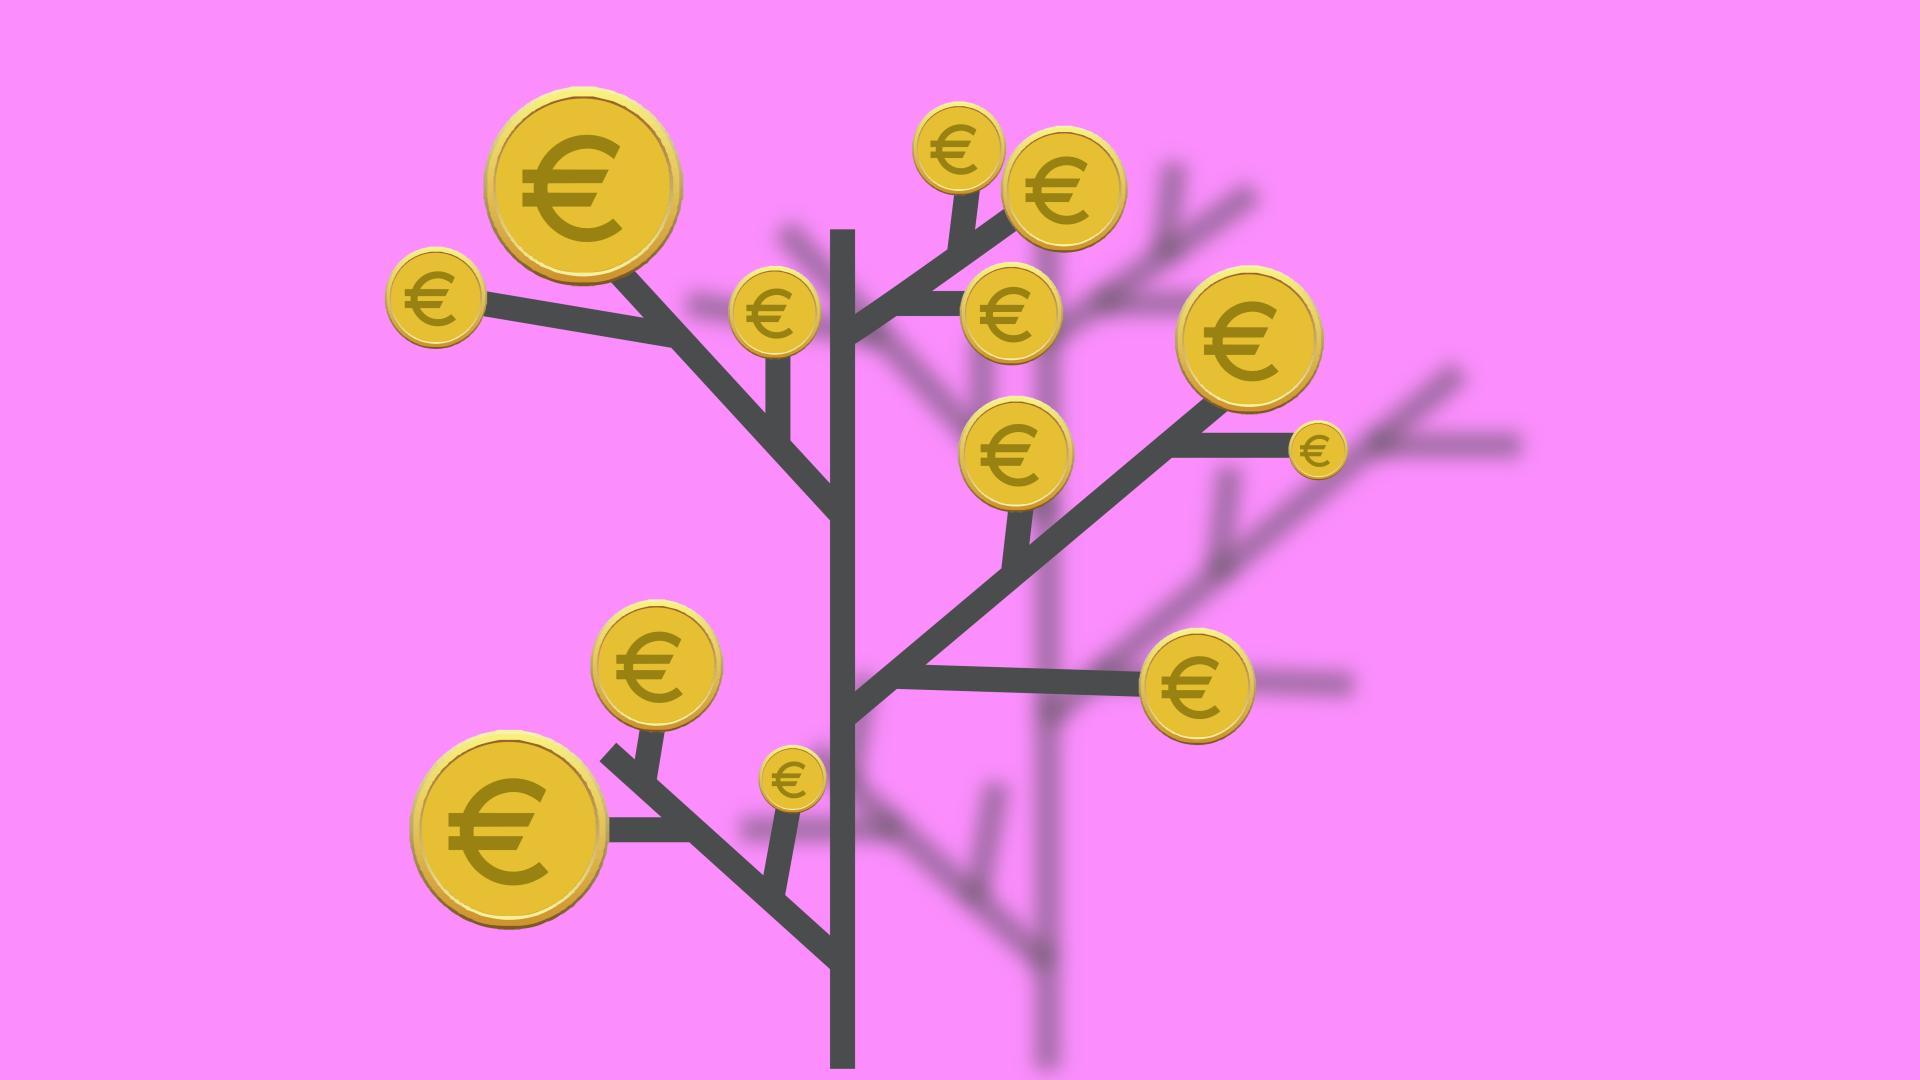 Des euros prêts a être récolte sur une branche